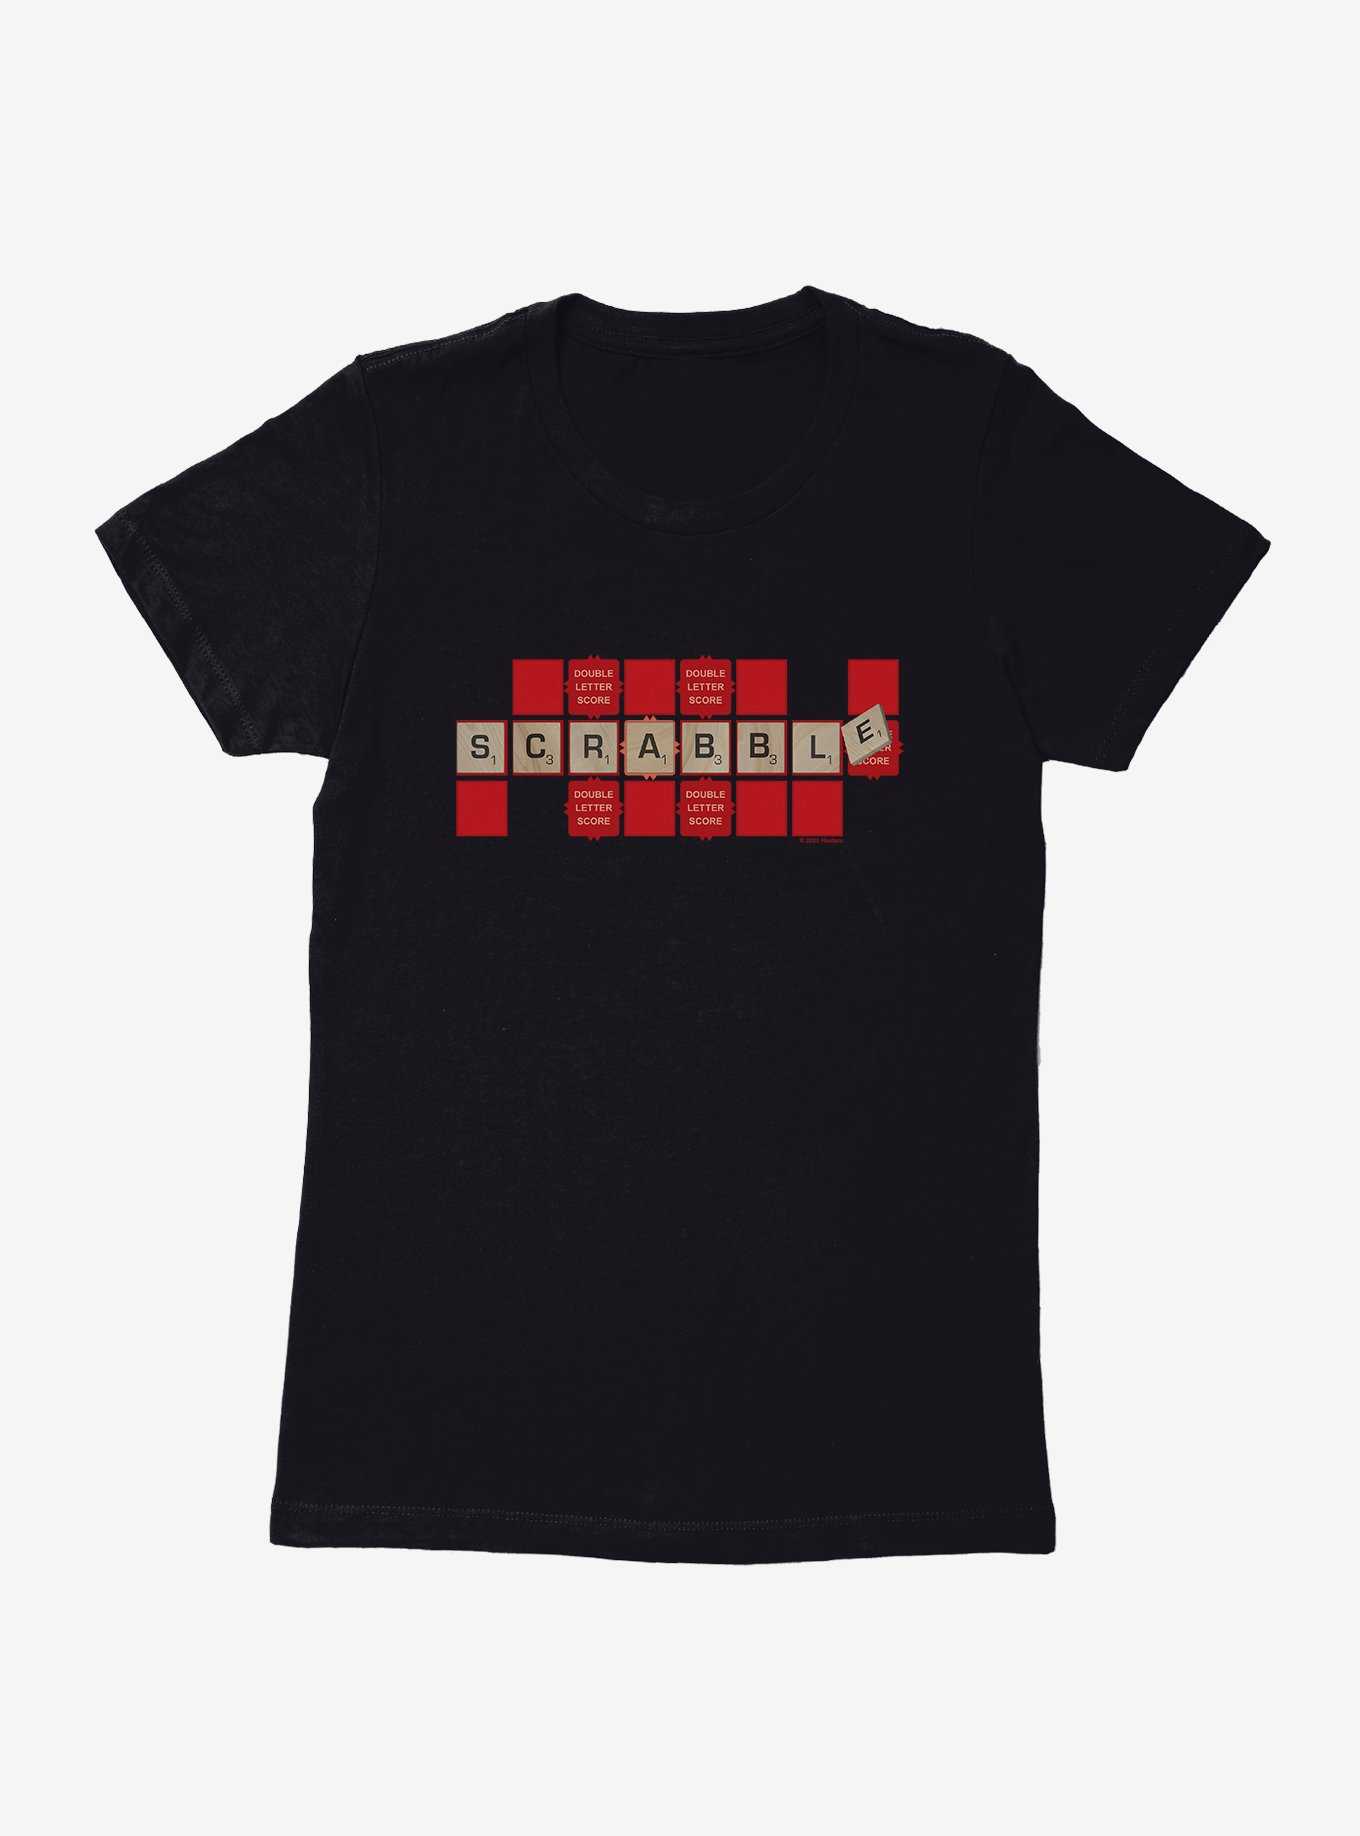 Scrabble Double Letter Score Womens T-Shirt, , hi-res